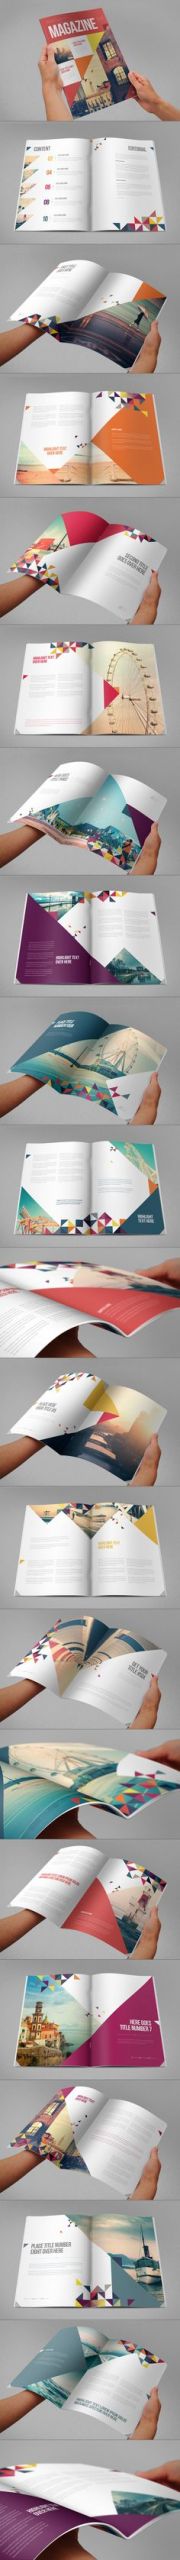 e508ac d0af9f11ce2e graphic design magazine editorial design magazine